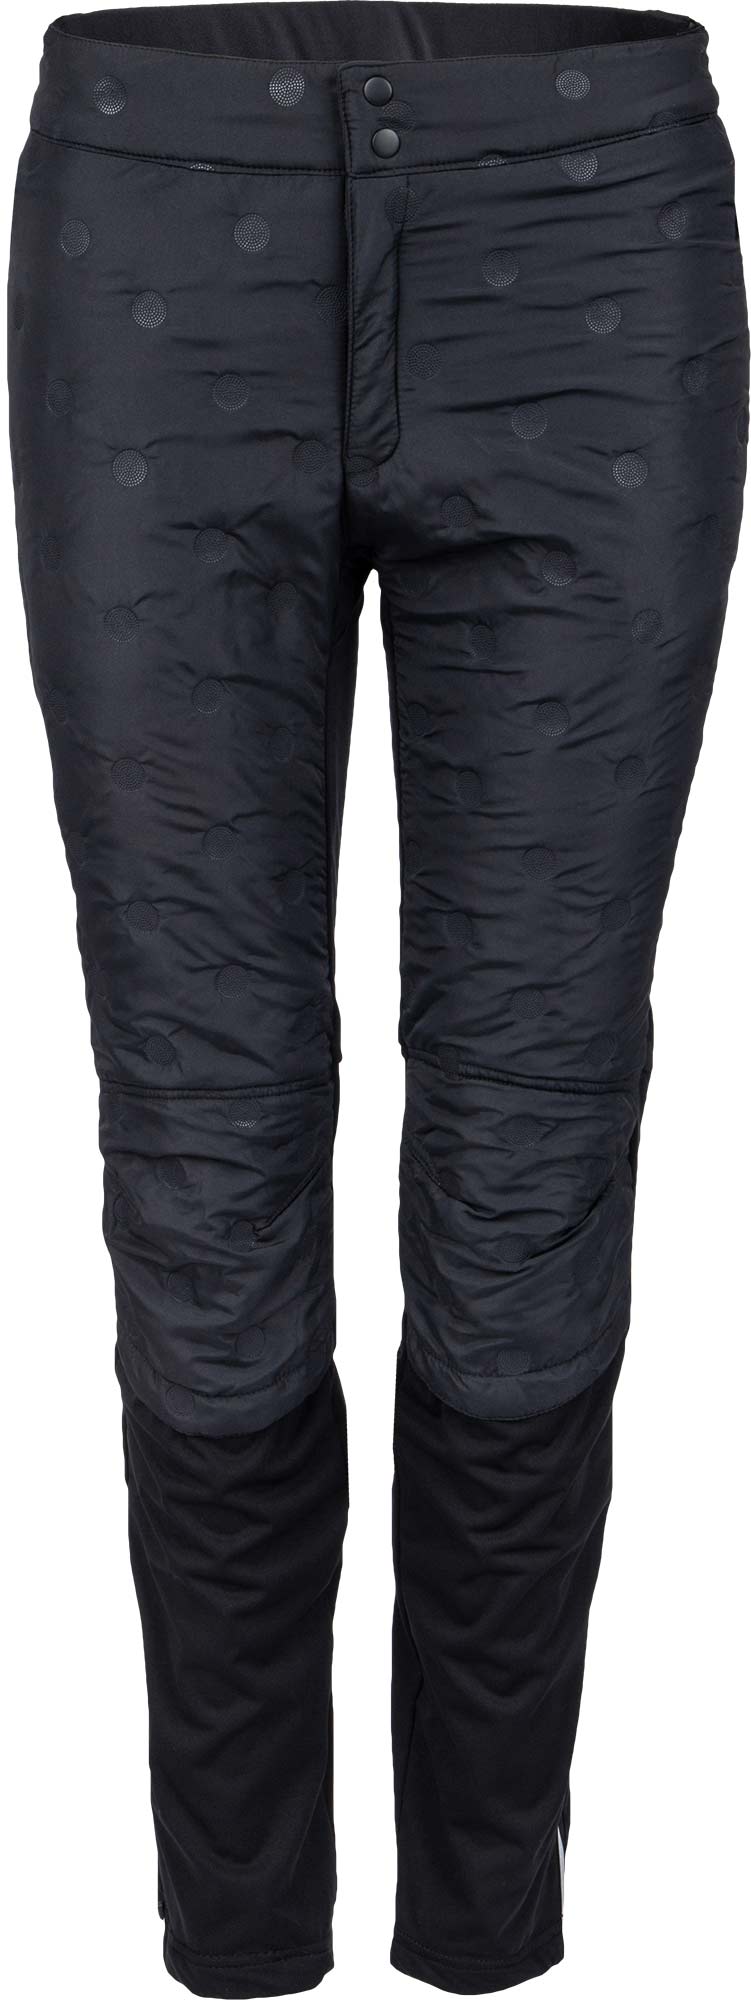 Pantaloni de iarnă matlasați stilați pentru femei